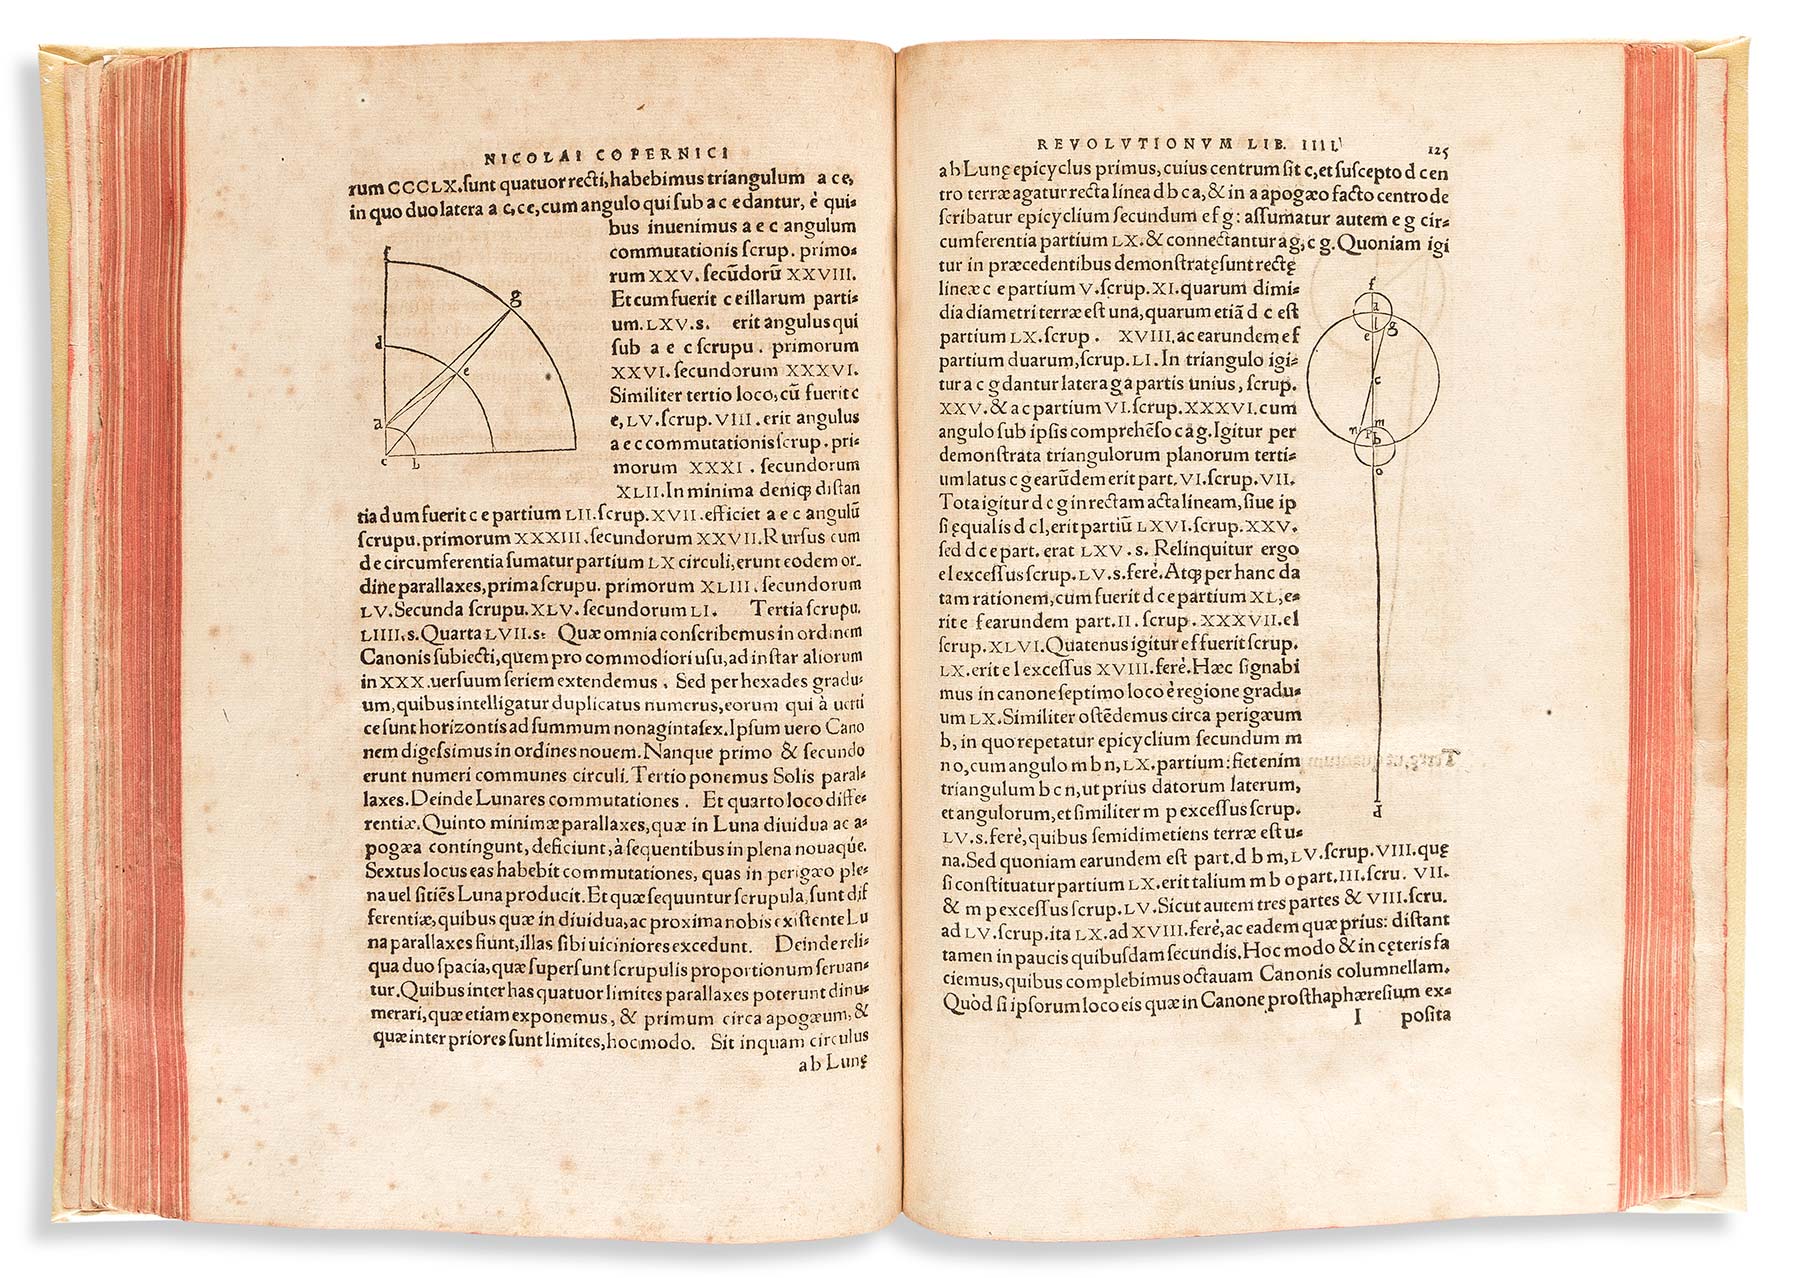 Nicolaus Copernicus, 'De Revolutionibus Orbium Coelestium,' second edition, Basel, 1566, $60,000-$80,000.